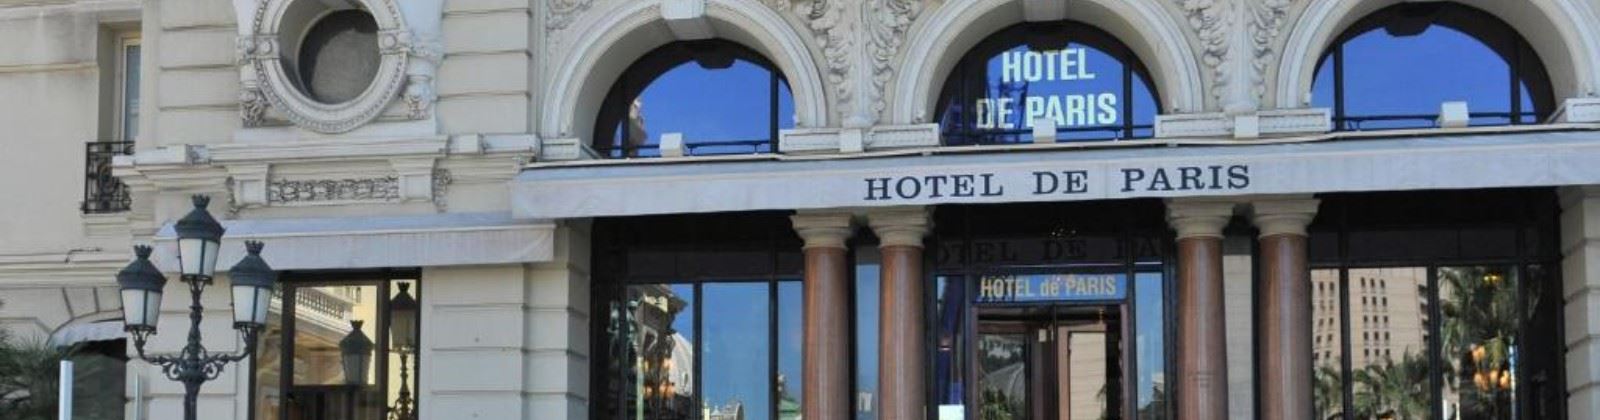 OLEVENE image - hotel-de-paris-monte-carlo-olevene-restaurant-seminaire-convention-